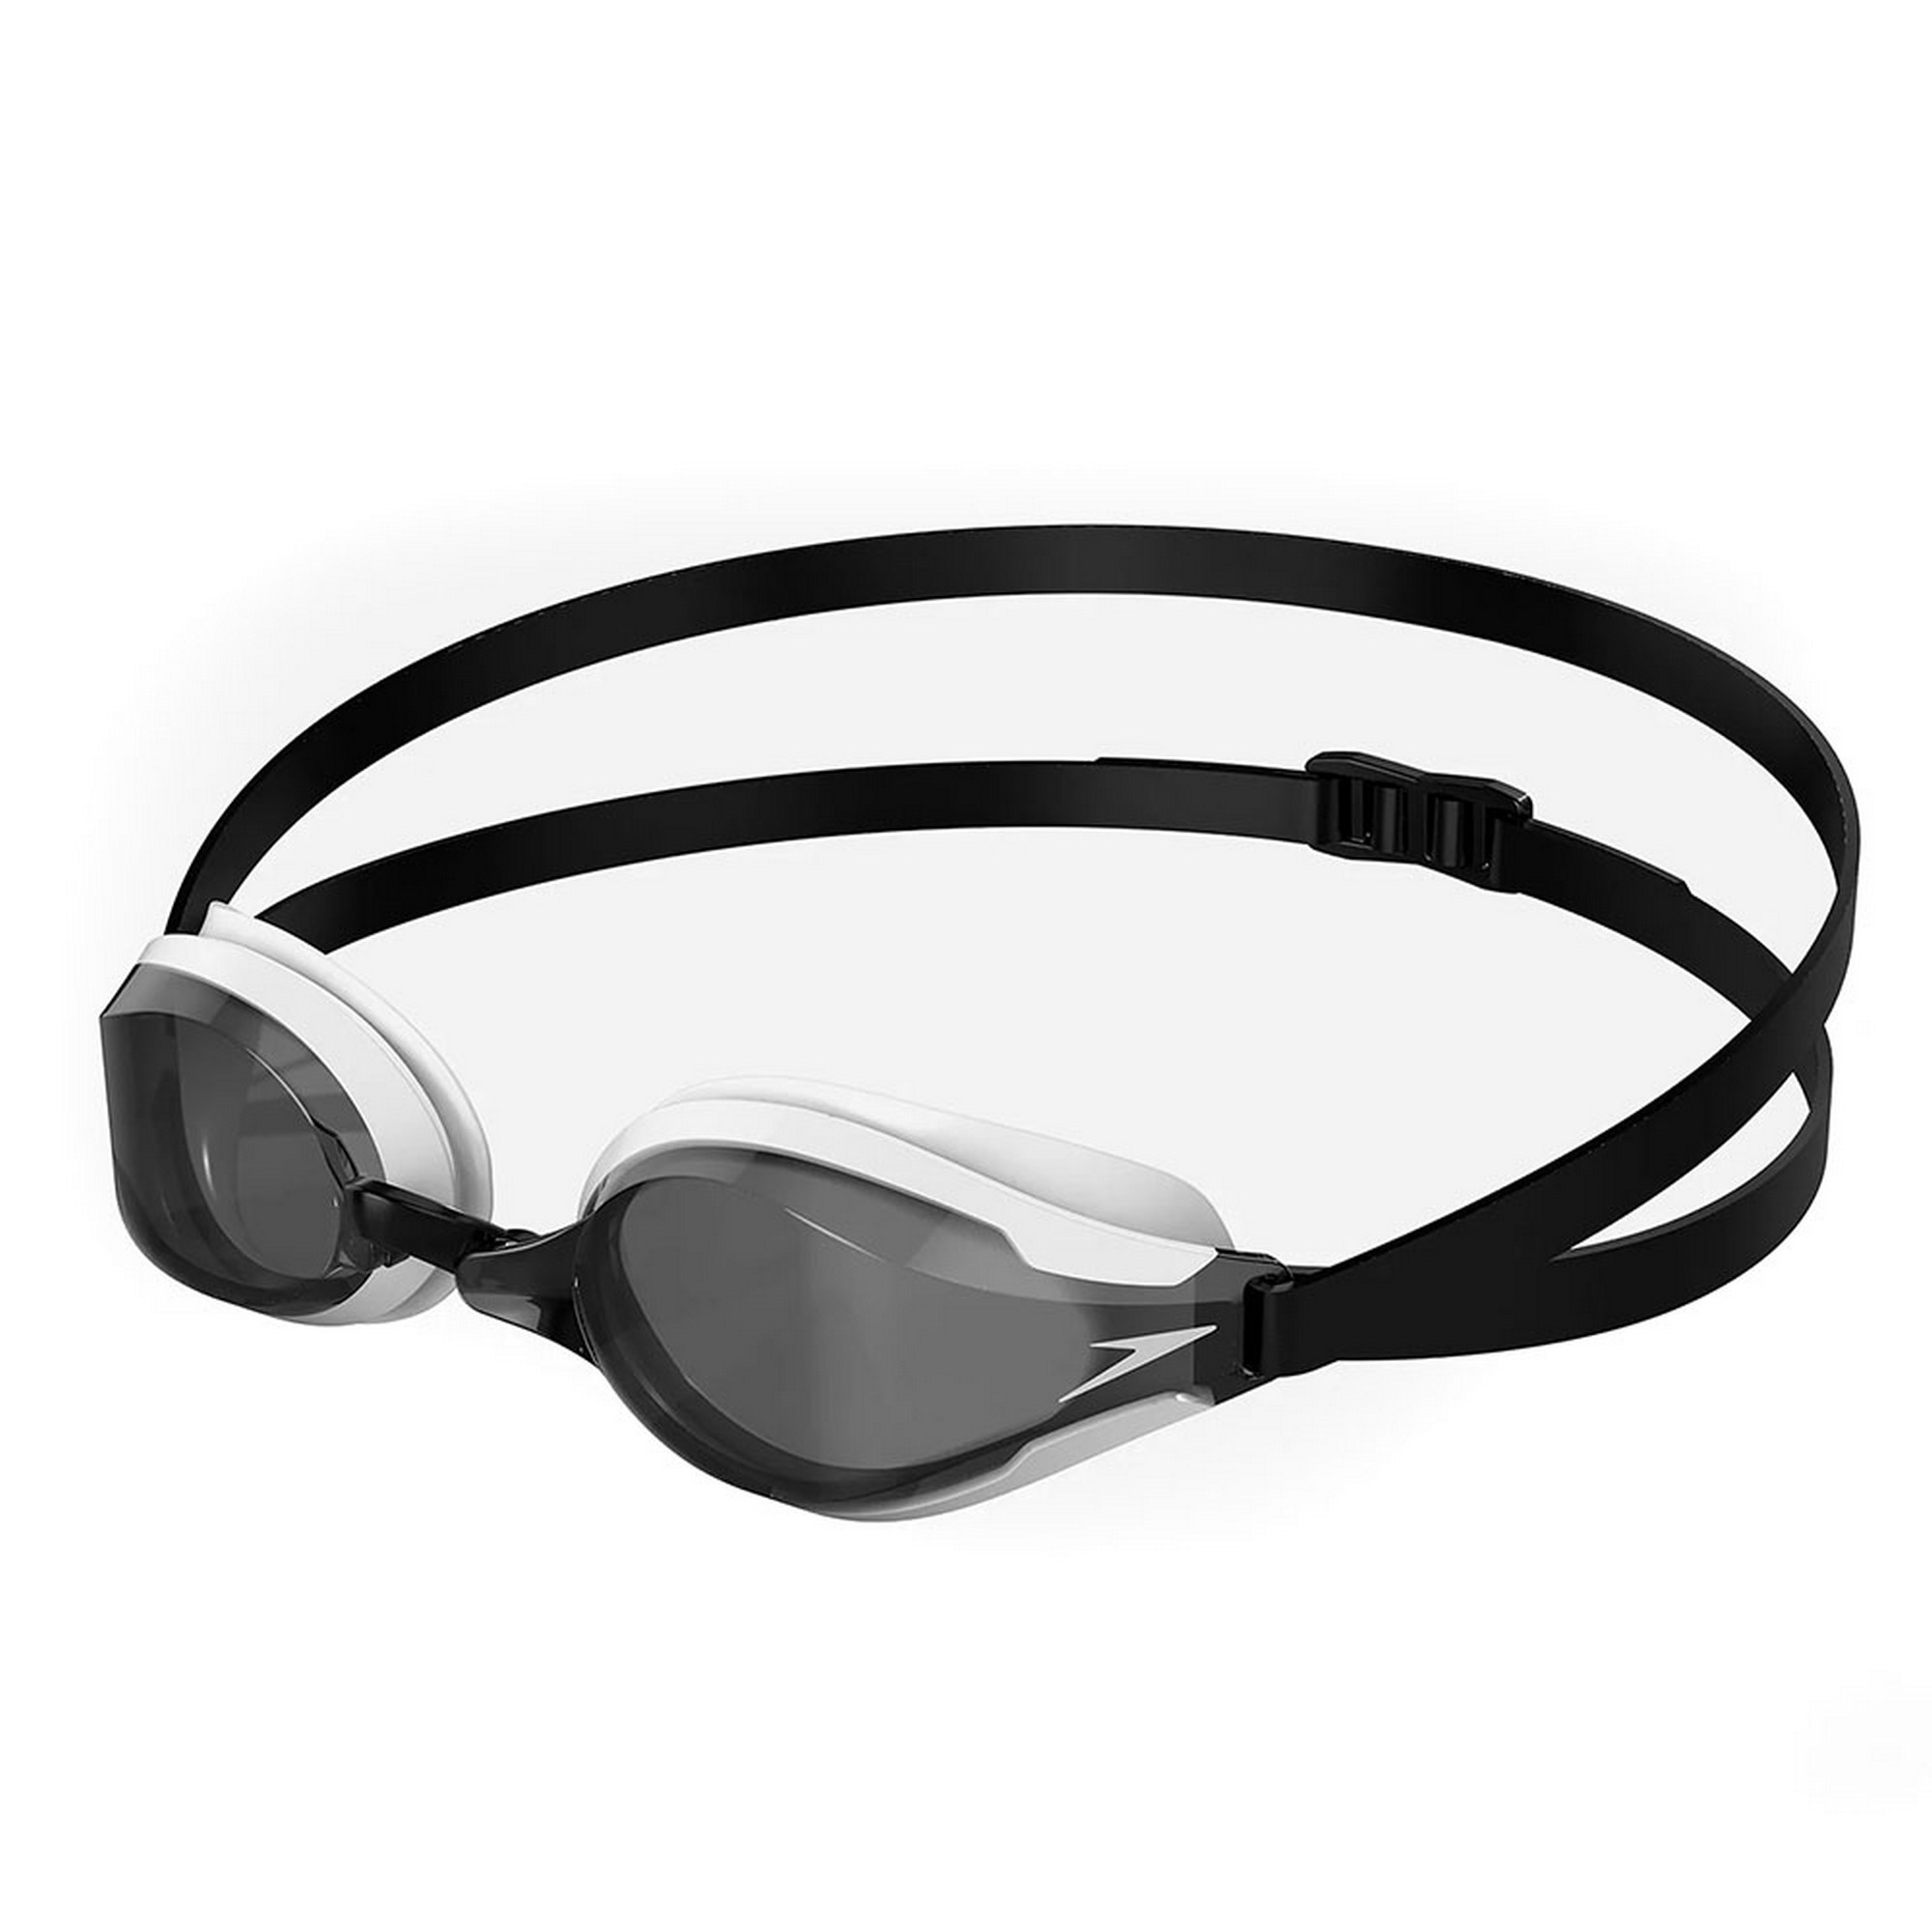 Очки для плавания Speedo Fastskin Speedosocket 8-108967988 дымчатые линзы, белая оправа 2000_2000